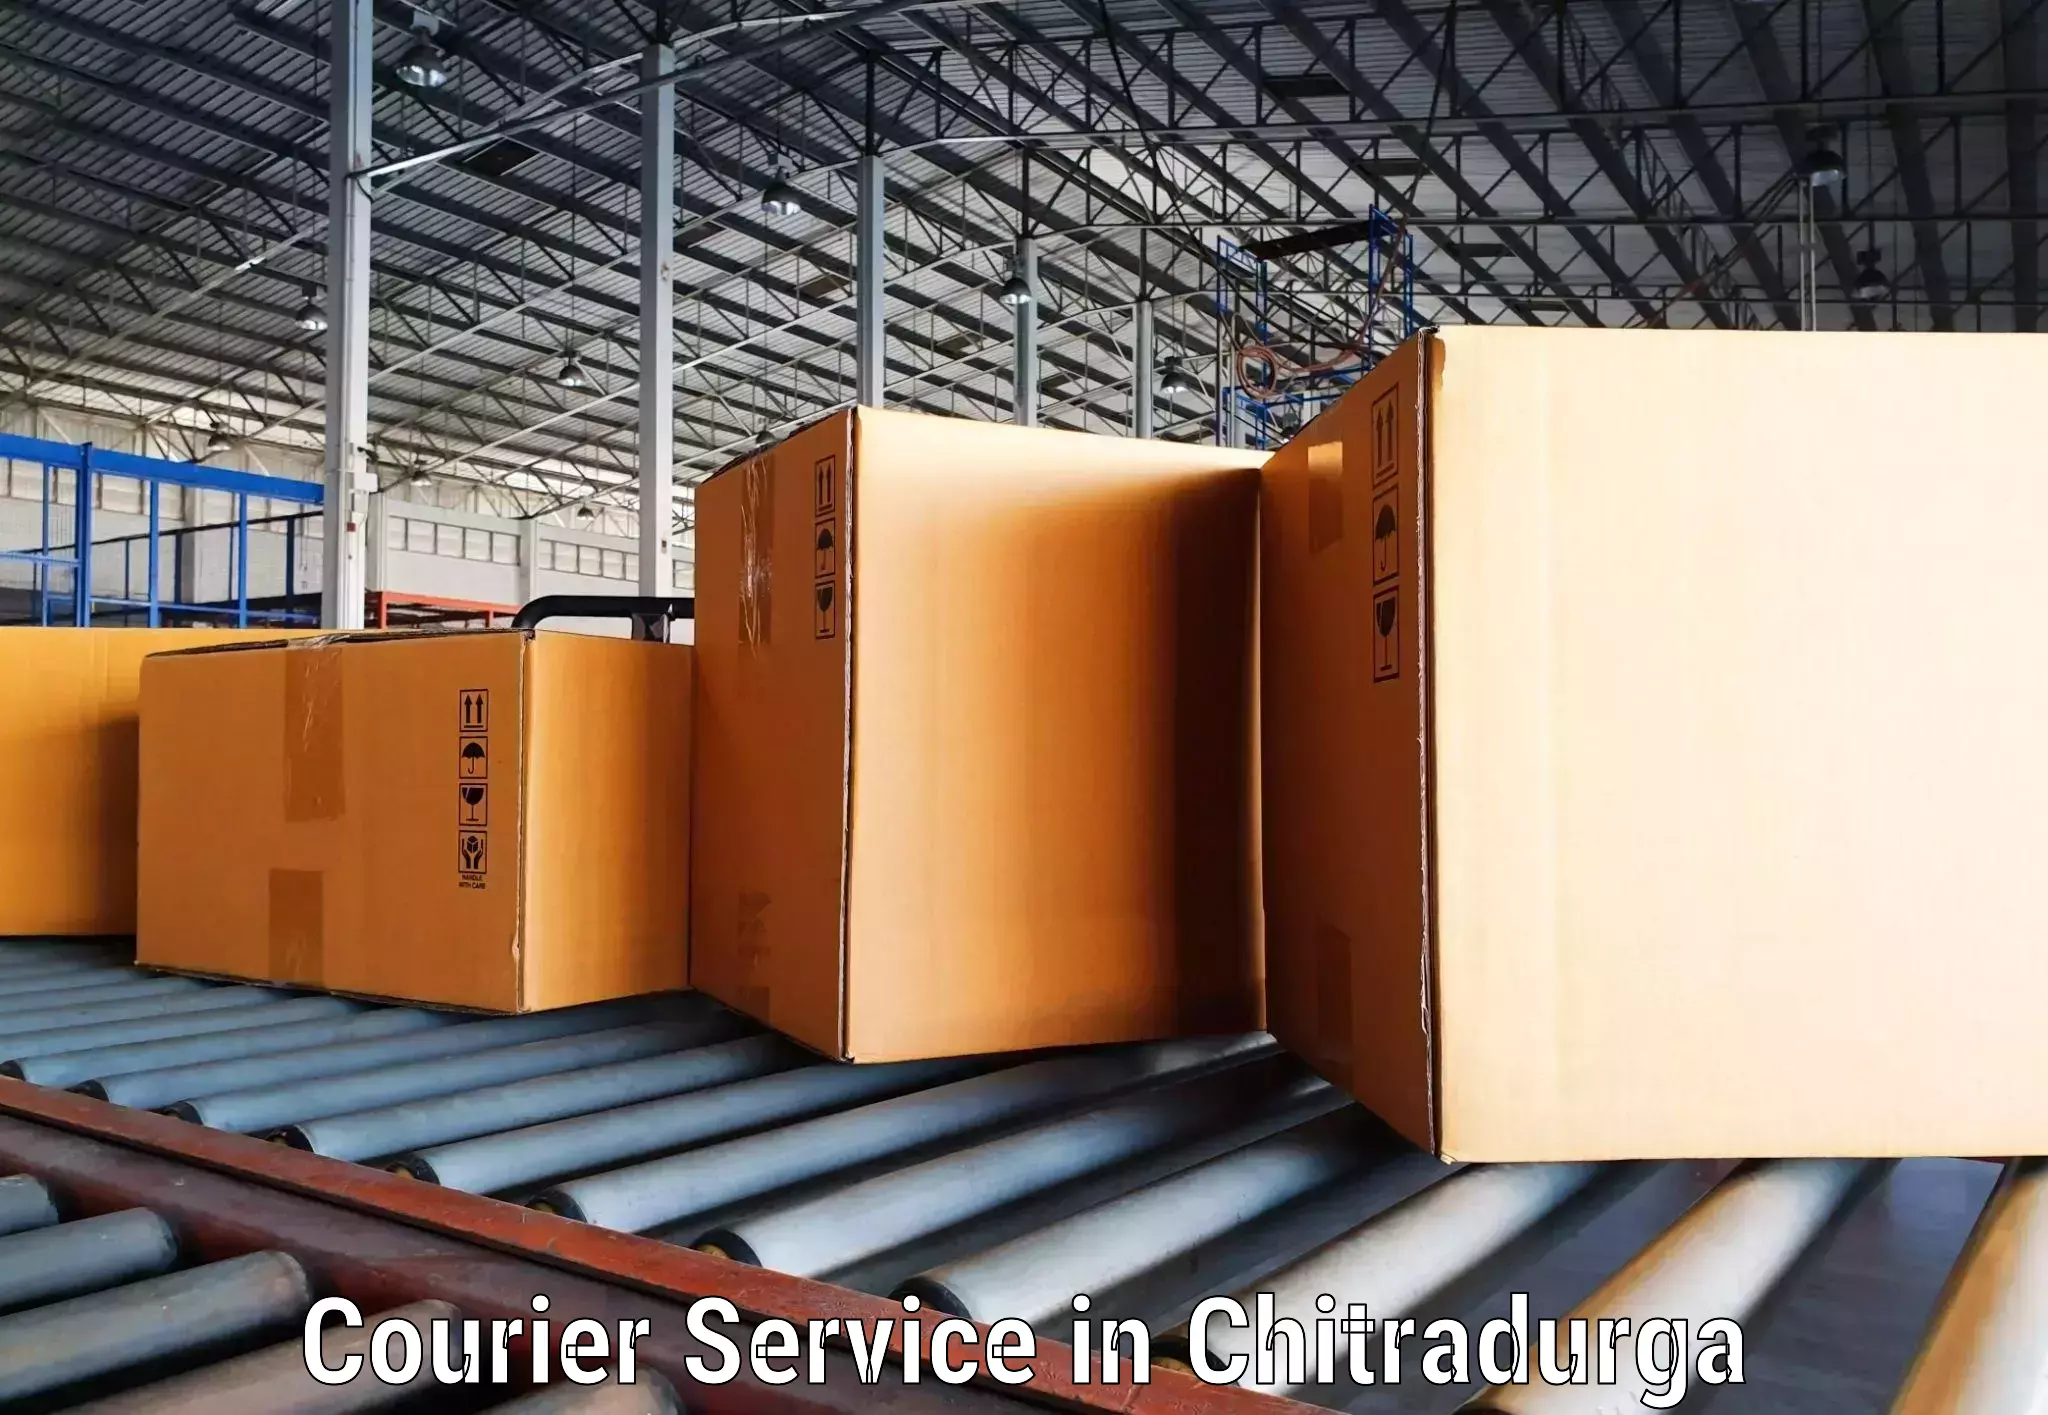 International parcel service in Chitradurga